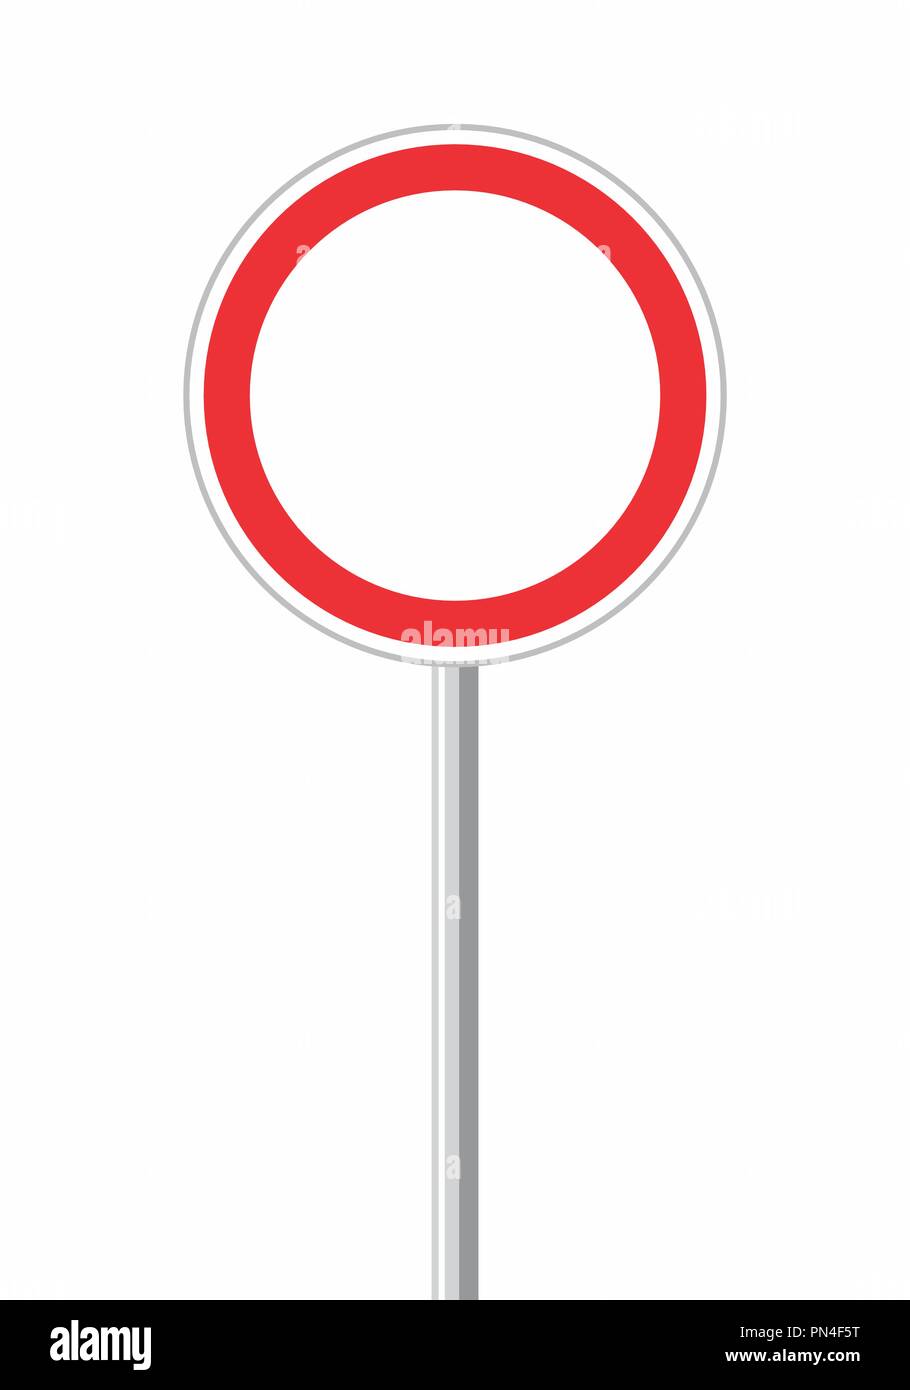 Ilustración de una señal de tráfico redonda vacía Ilustración del Vector